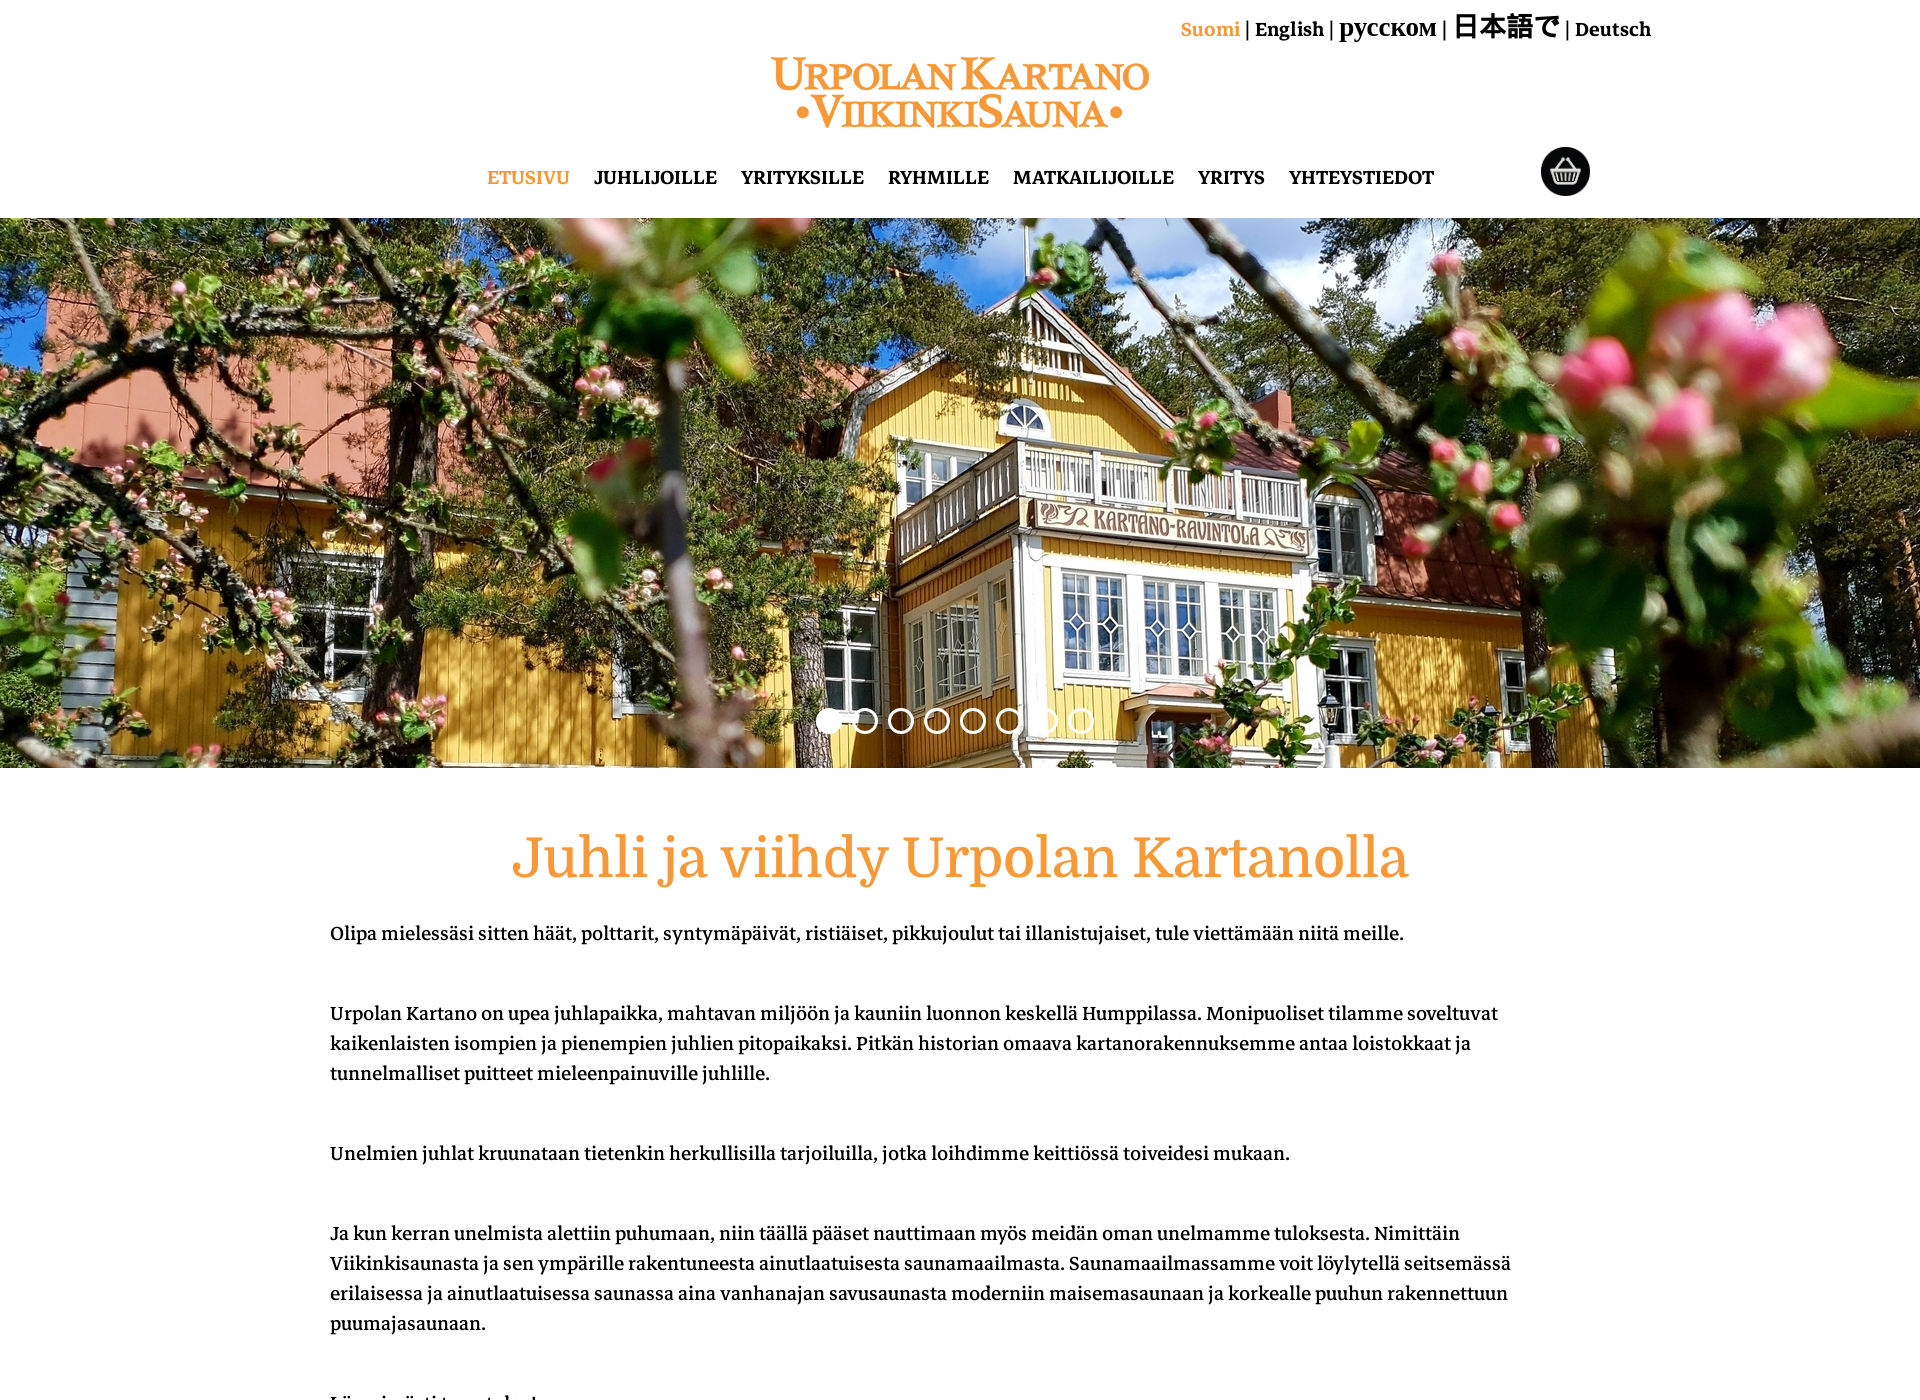 Screenshot for viikinkisauna.fi